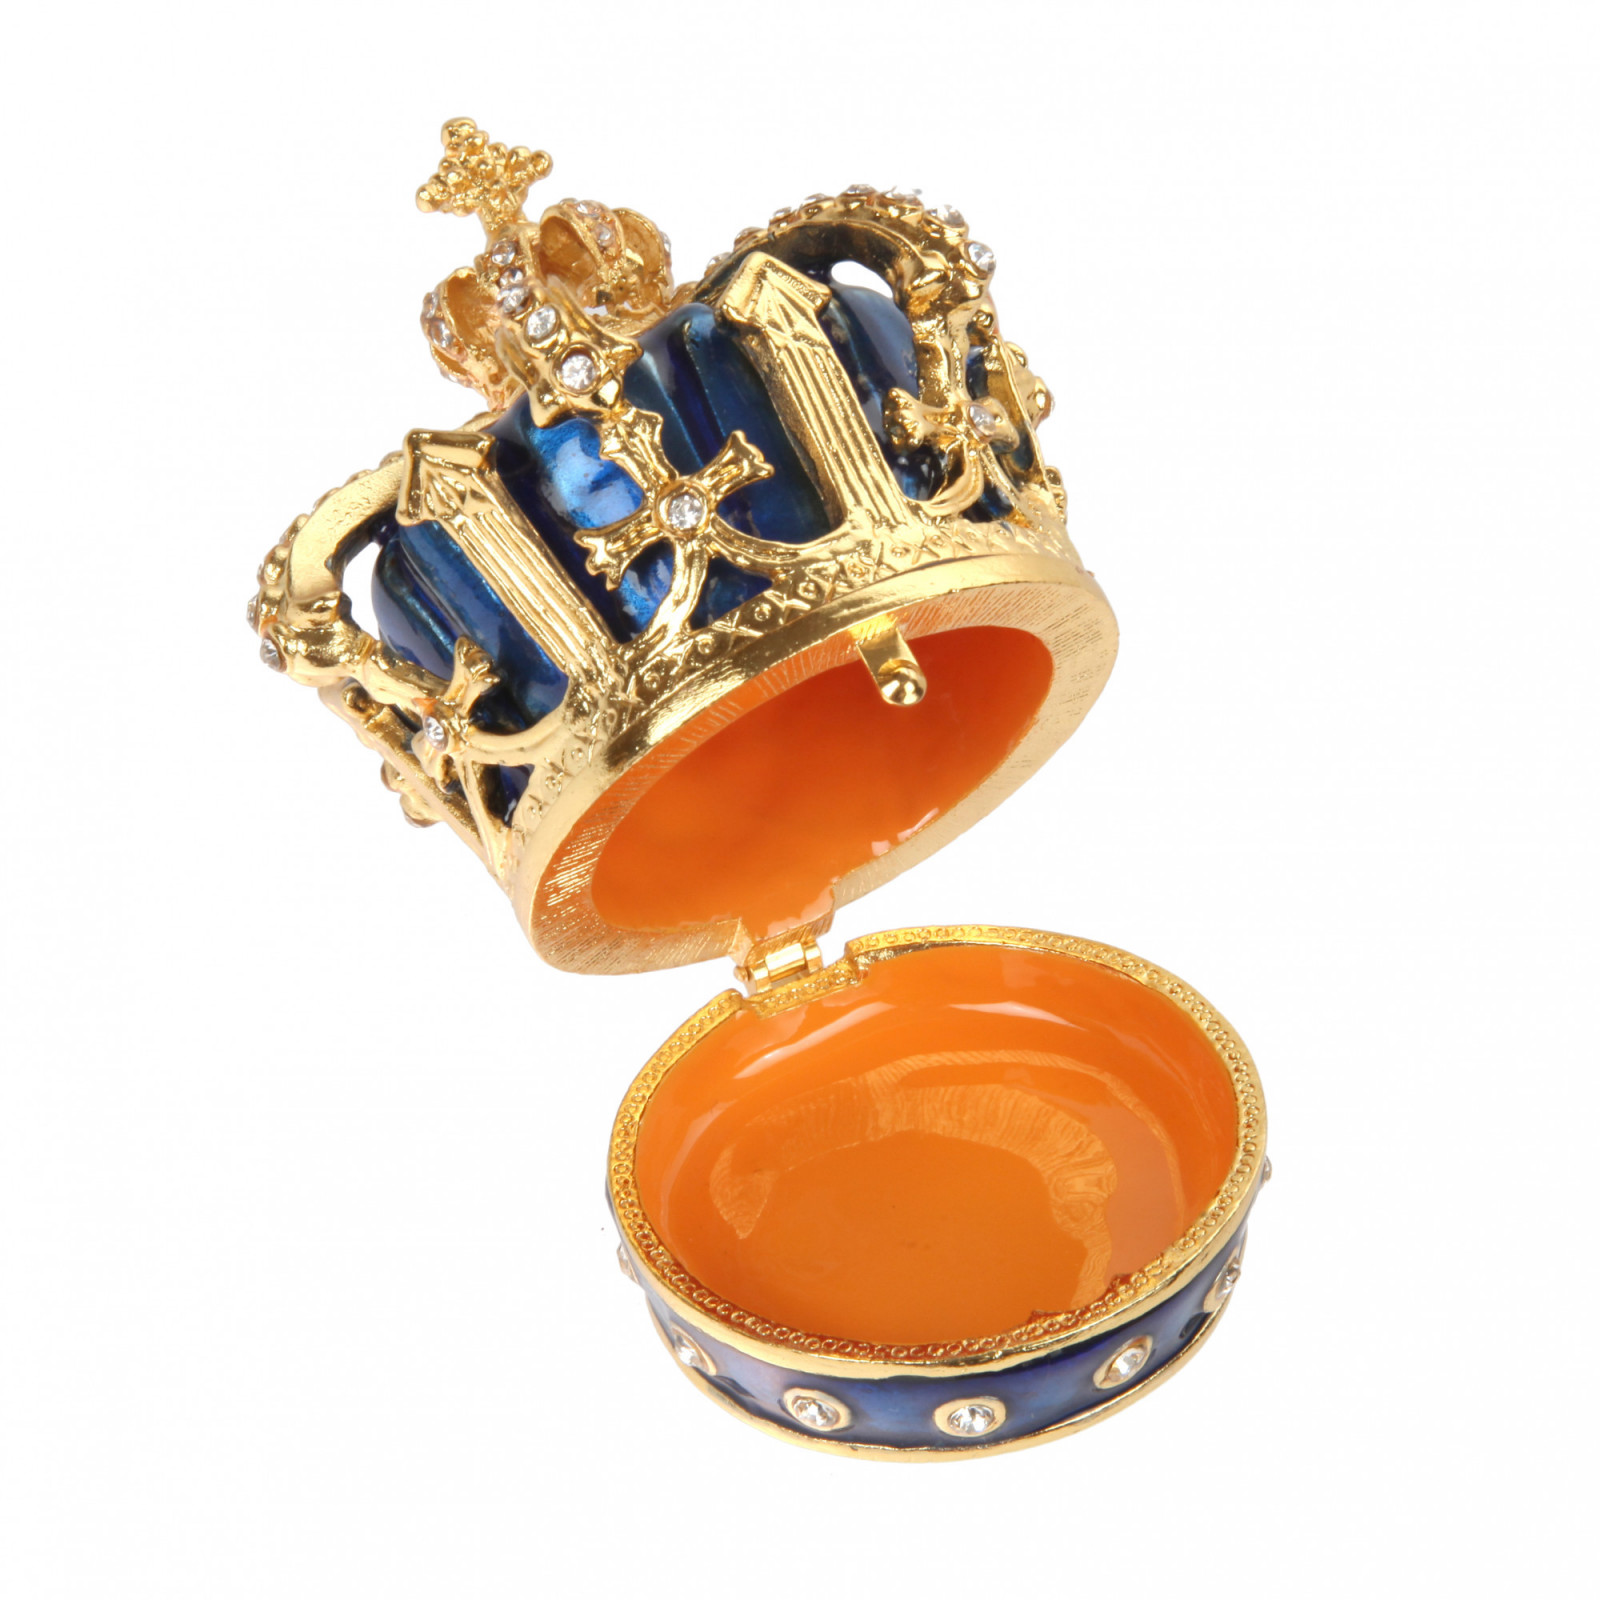 Шкатулка сувенирная в виде королевской короны,S-1653